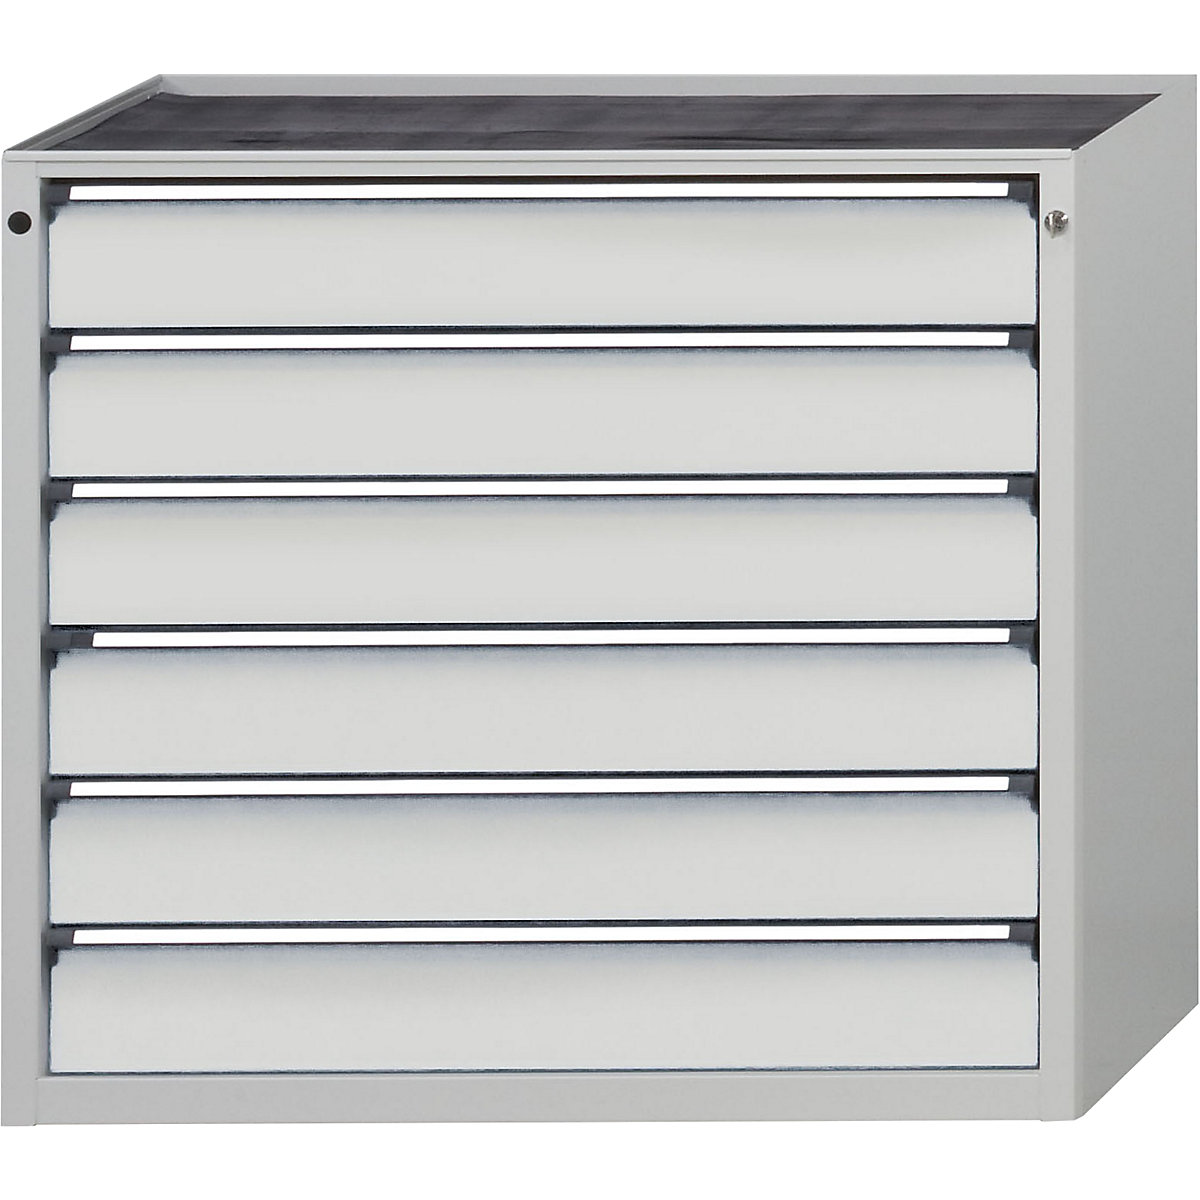 ANKE – Armoire à tiroirs, l x p 1060 x 675 mm, 6 tiroirs, hauteur 980 mm, façade gris clair